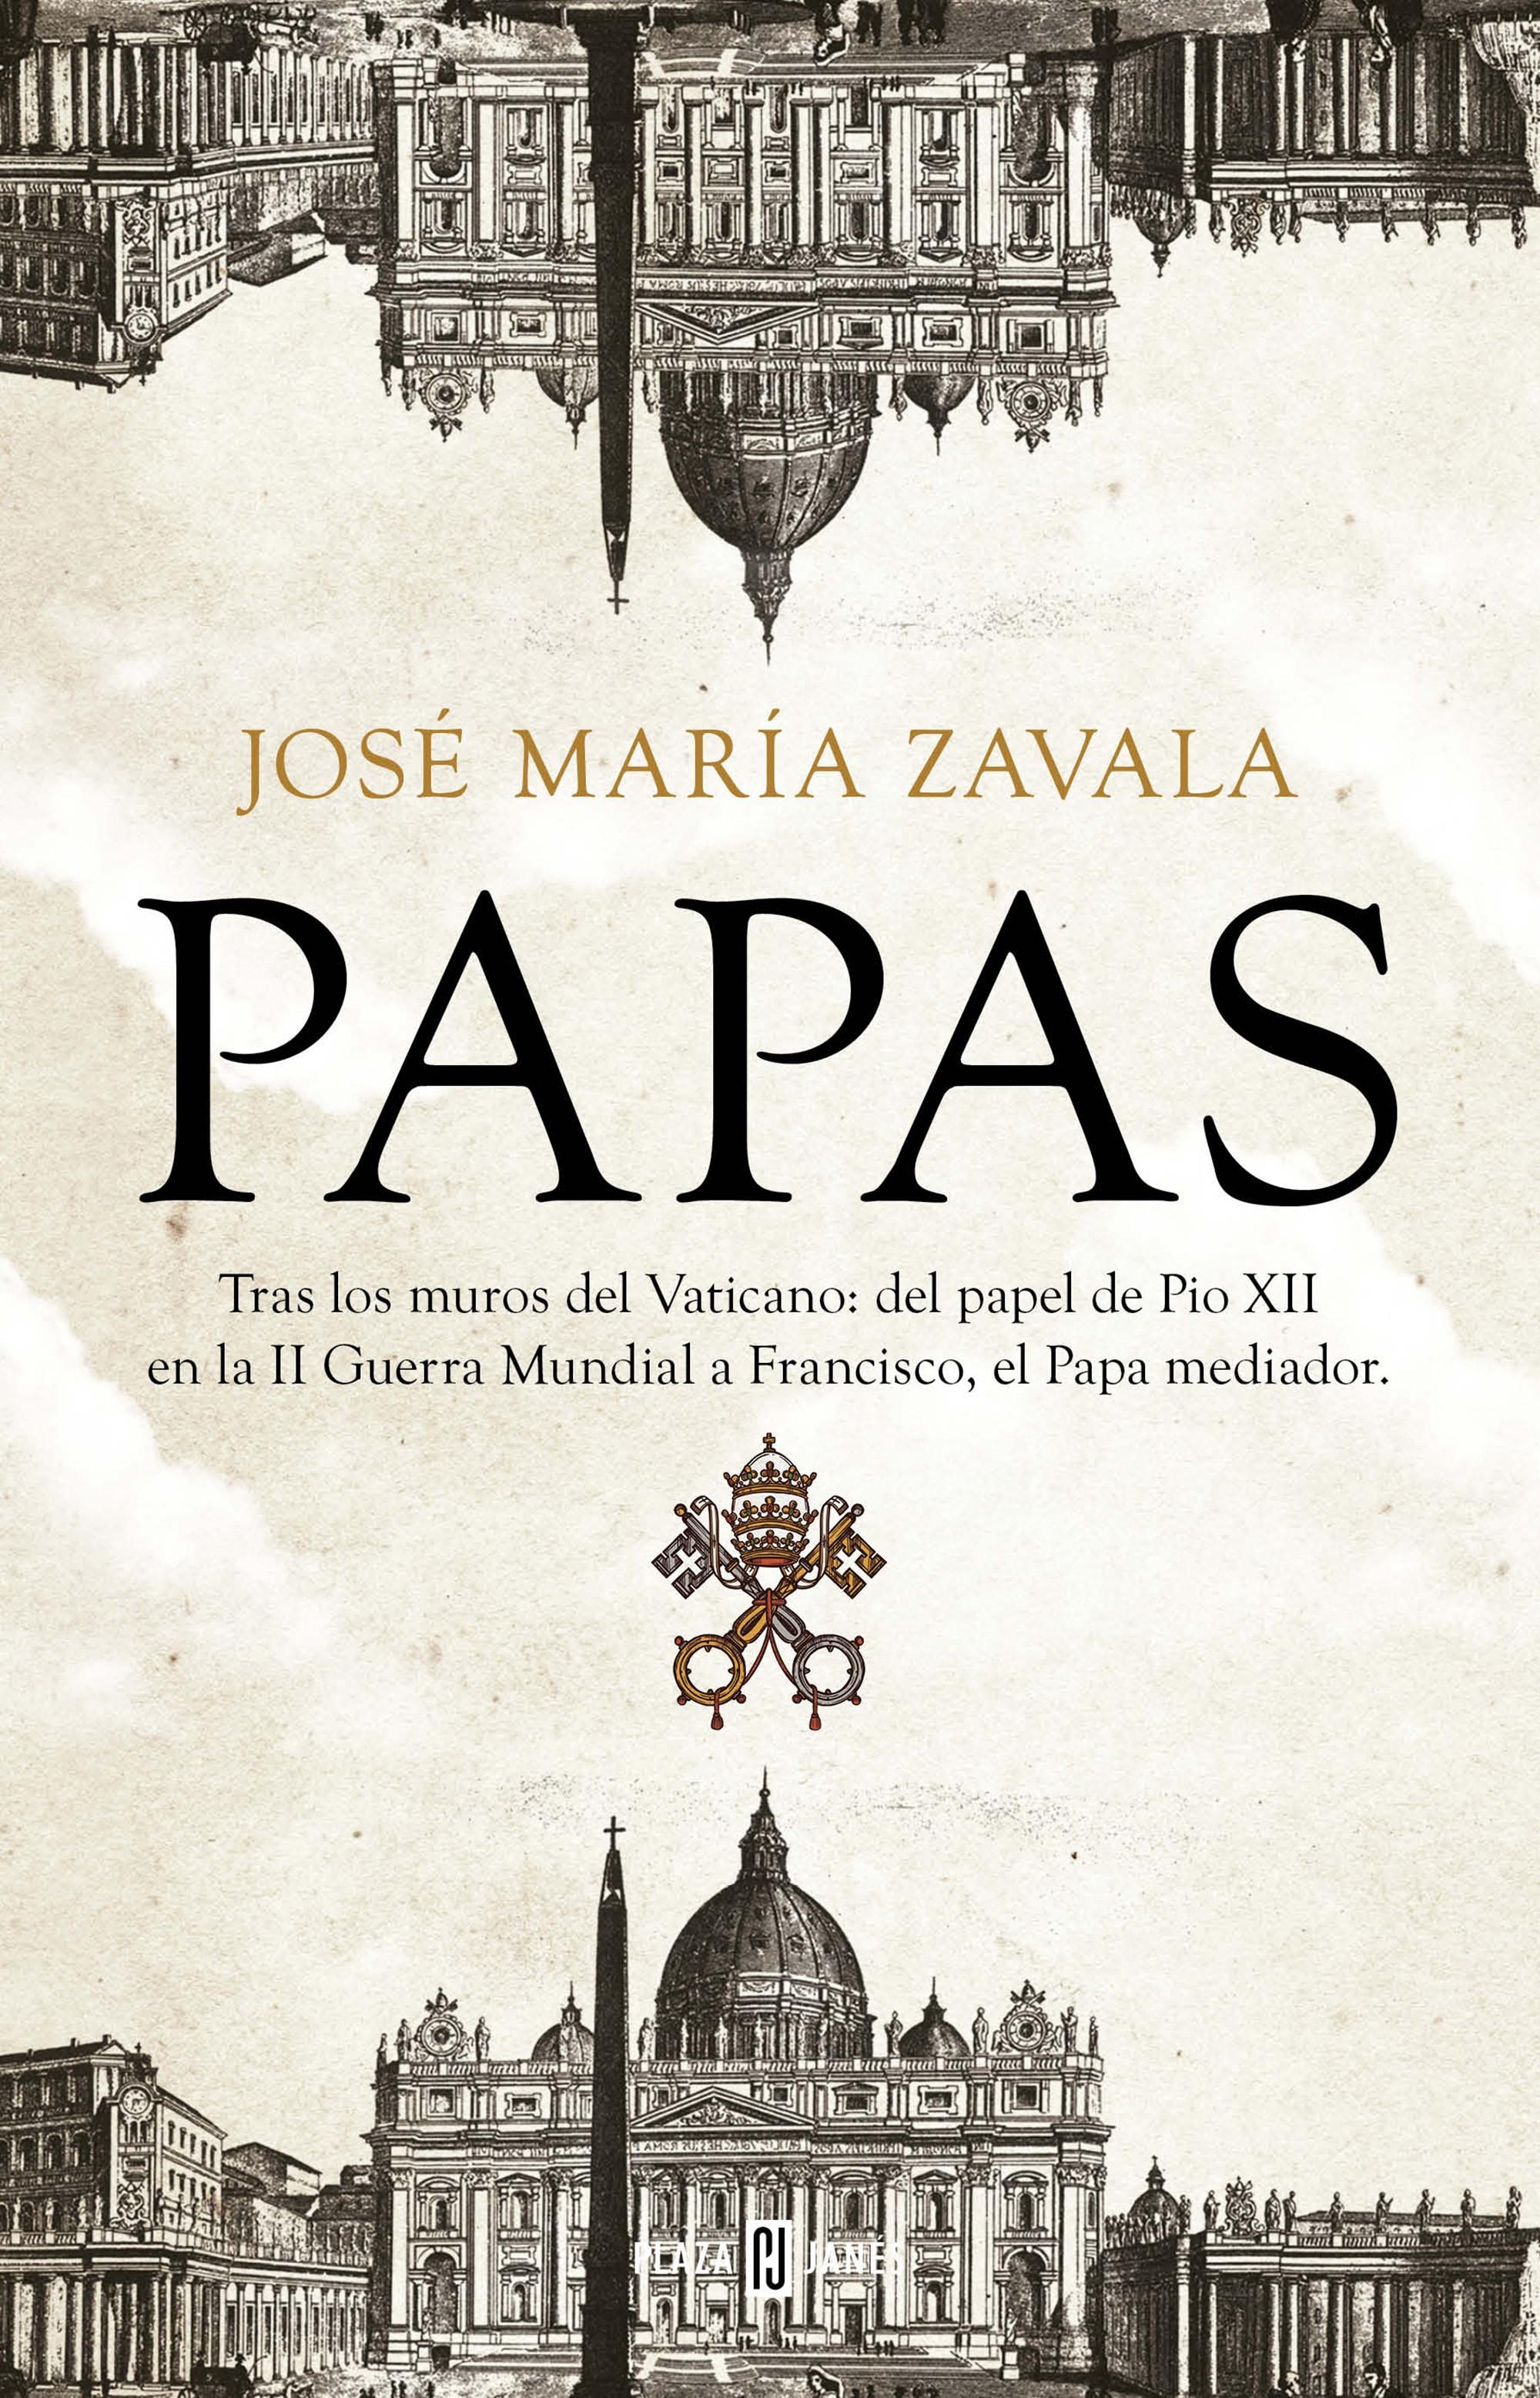 Papas "Tras los muros del Vaticano: del papel de Pío XII en la Segunda Guerra Mundial a Francisco, el Papa..."